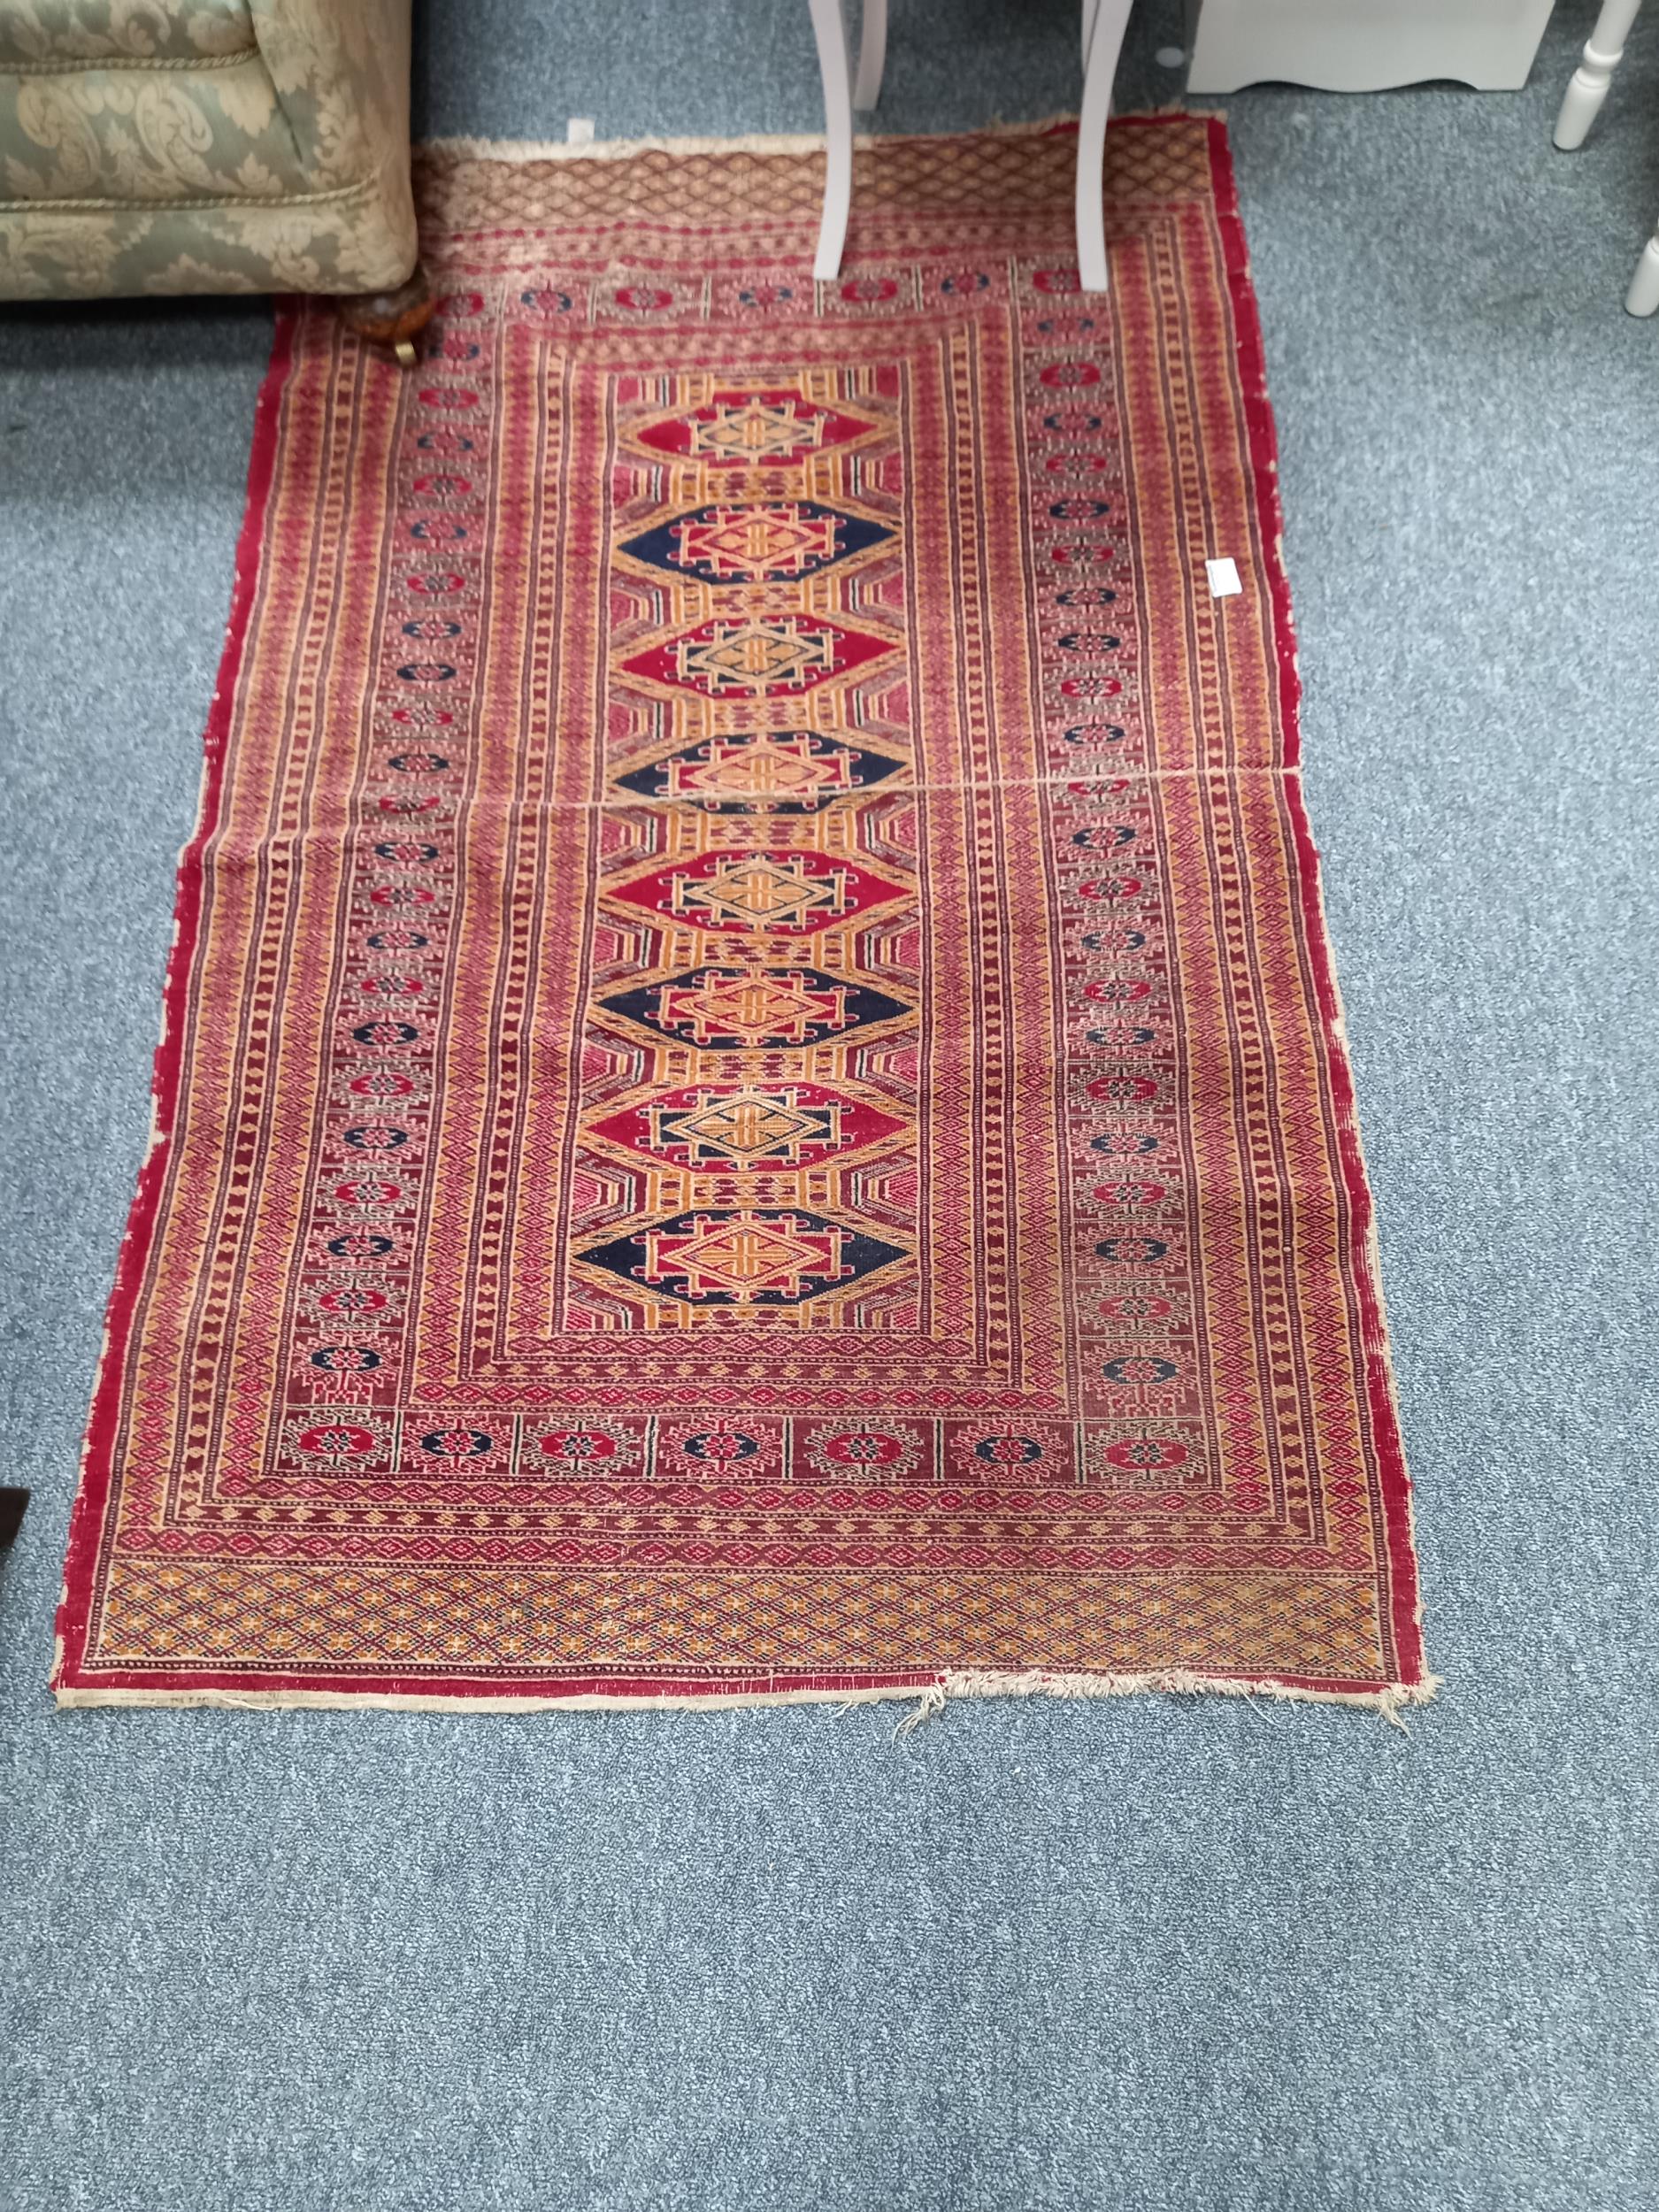 x2 Afgan rug (worn) - Image 2 of 2